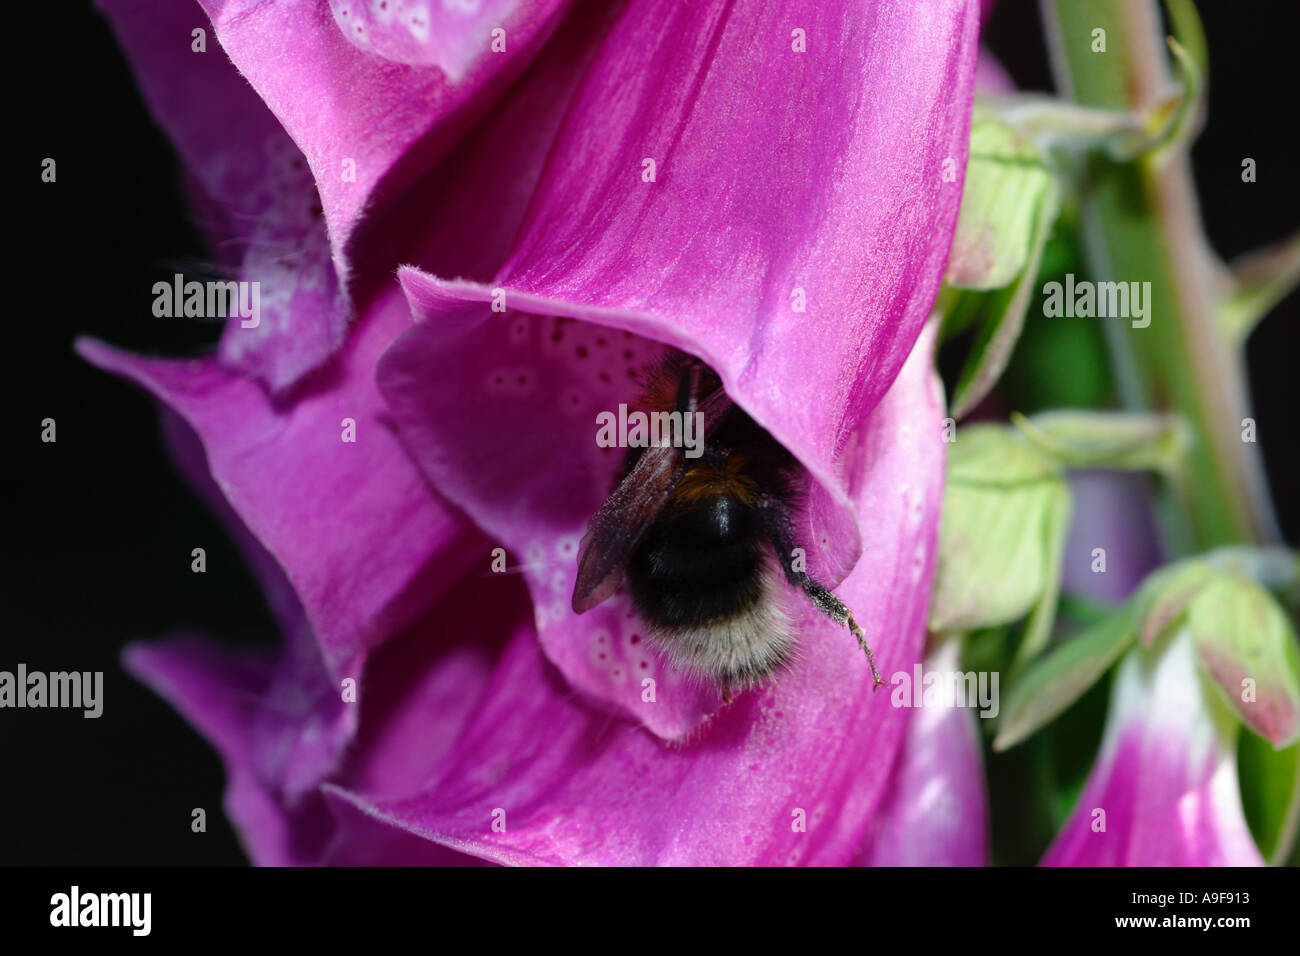 Foxglove comune fiore con bee entrando a raccogliere polline Foto Stock